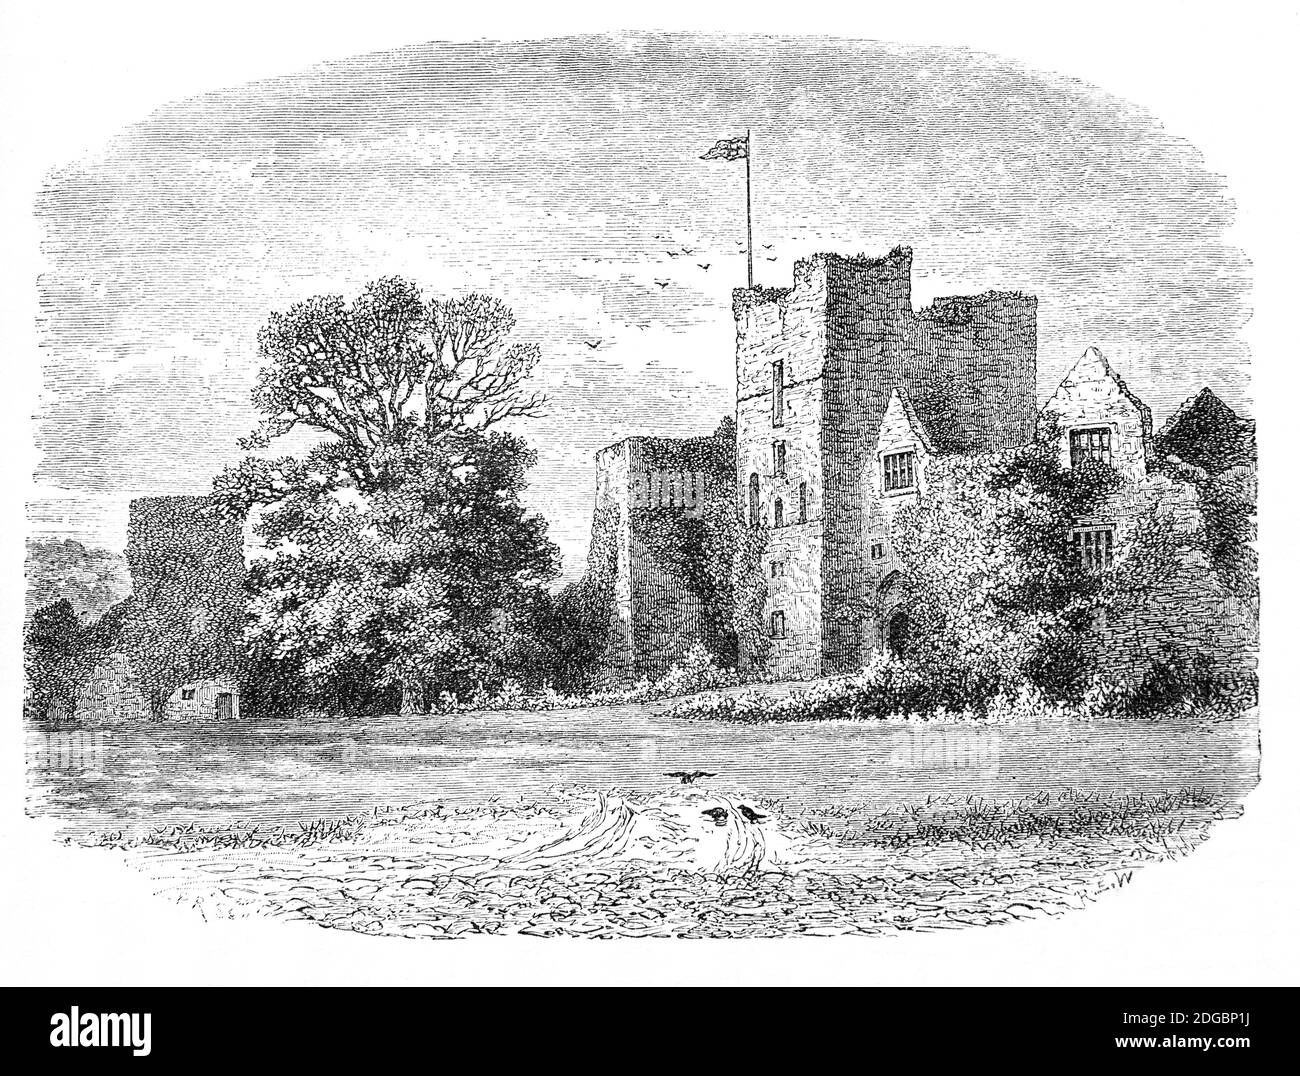 Ein Blick aus dem späten 19. Jahrhundert auf Ludlow Castle, eine zerstörte mittelalterliche Burg in Ludlow, Shropshire und eine der ersten Steinburgen, die in England gebaut wurden. Es wurde wahrscheinlich im 11. Jahrhundert von Walter de Lacy nach der normannischen Eroberung gegründet. Während des englischen Bürgerkriegs wurde es belagert, von einer Parlamentarierarierarmee im Jahr 1646, wo eine Garnison wurde für einen Großteil der Interregnum. Nach der Restaurierung von 1660, fiel es in Vernachlässigung, bis ein Herrenhaus in der äußeren bailey gebaut wurde. Abgesehen von einigen Landschaftsgestaltungen ist der Rest der Burg weitgehend unberührt geblieben. Stockfoto